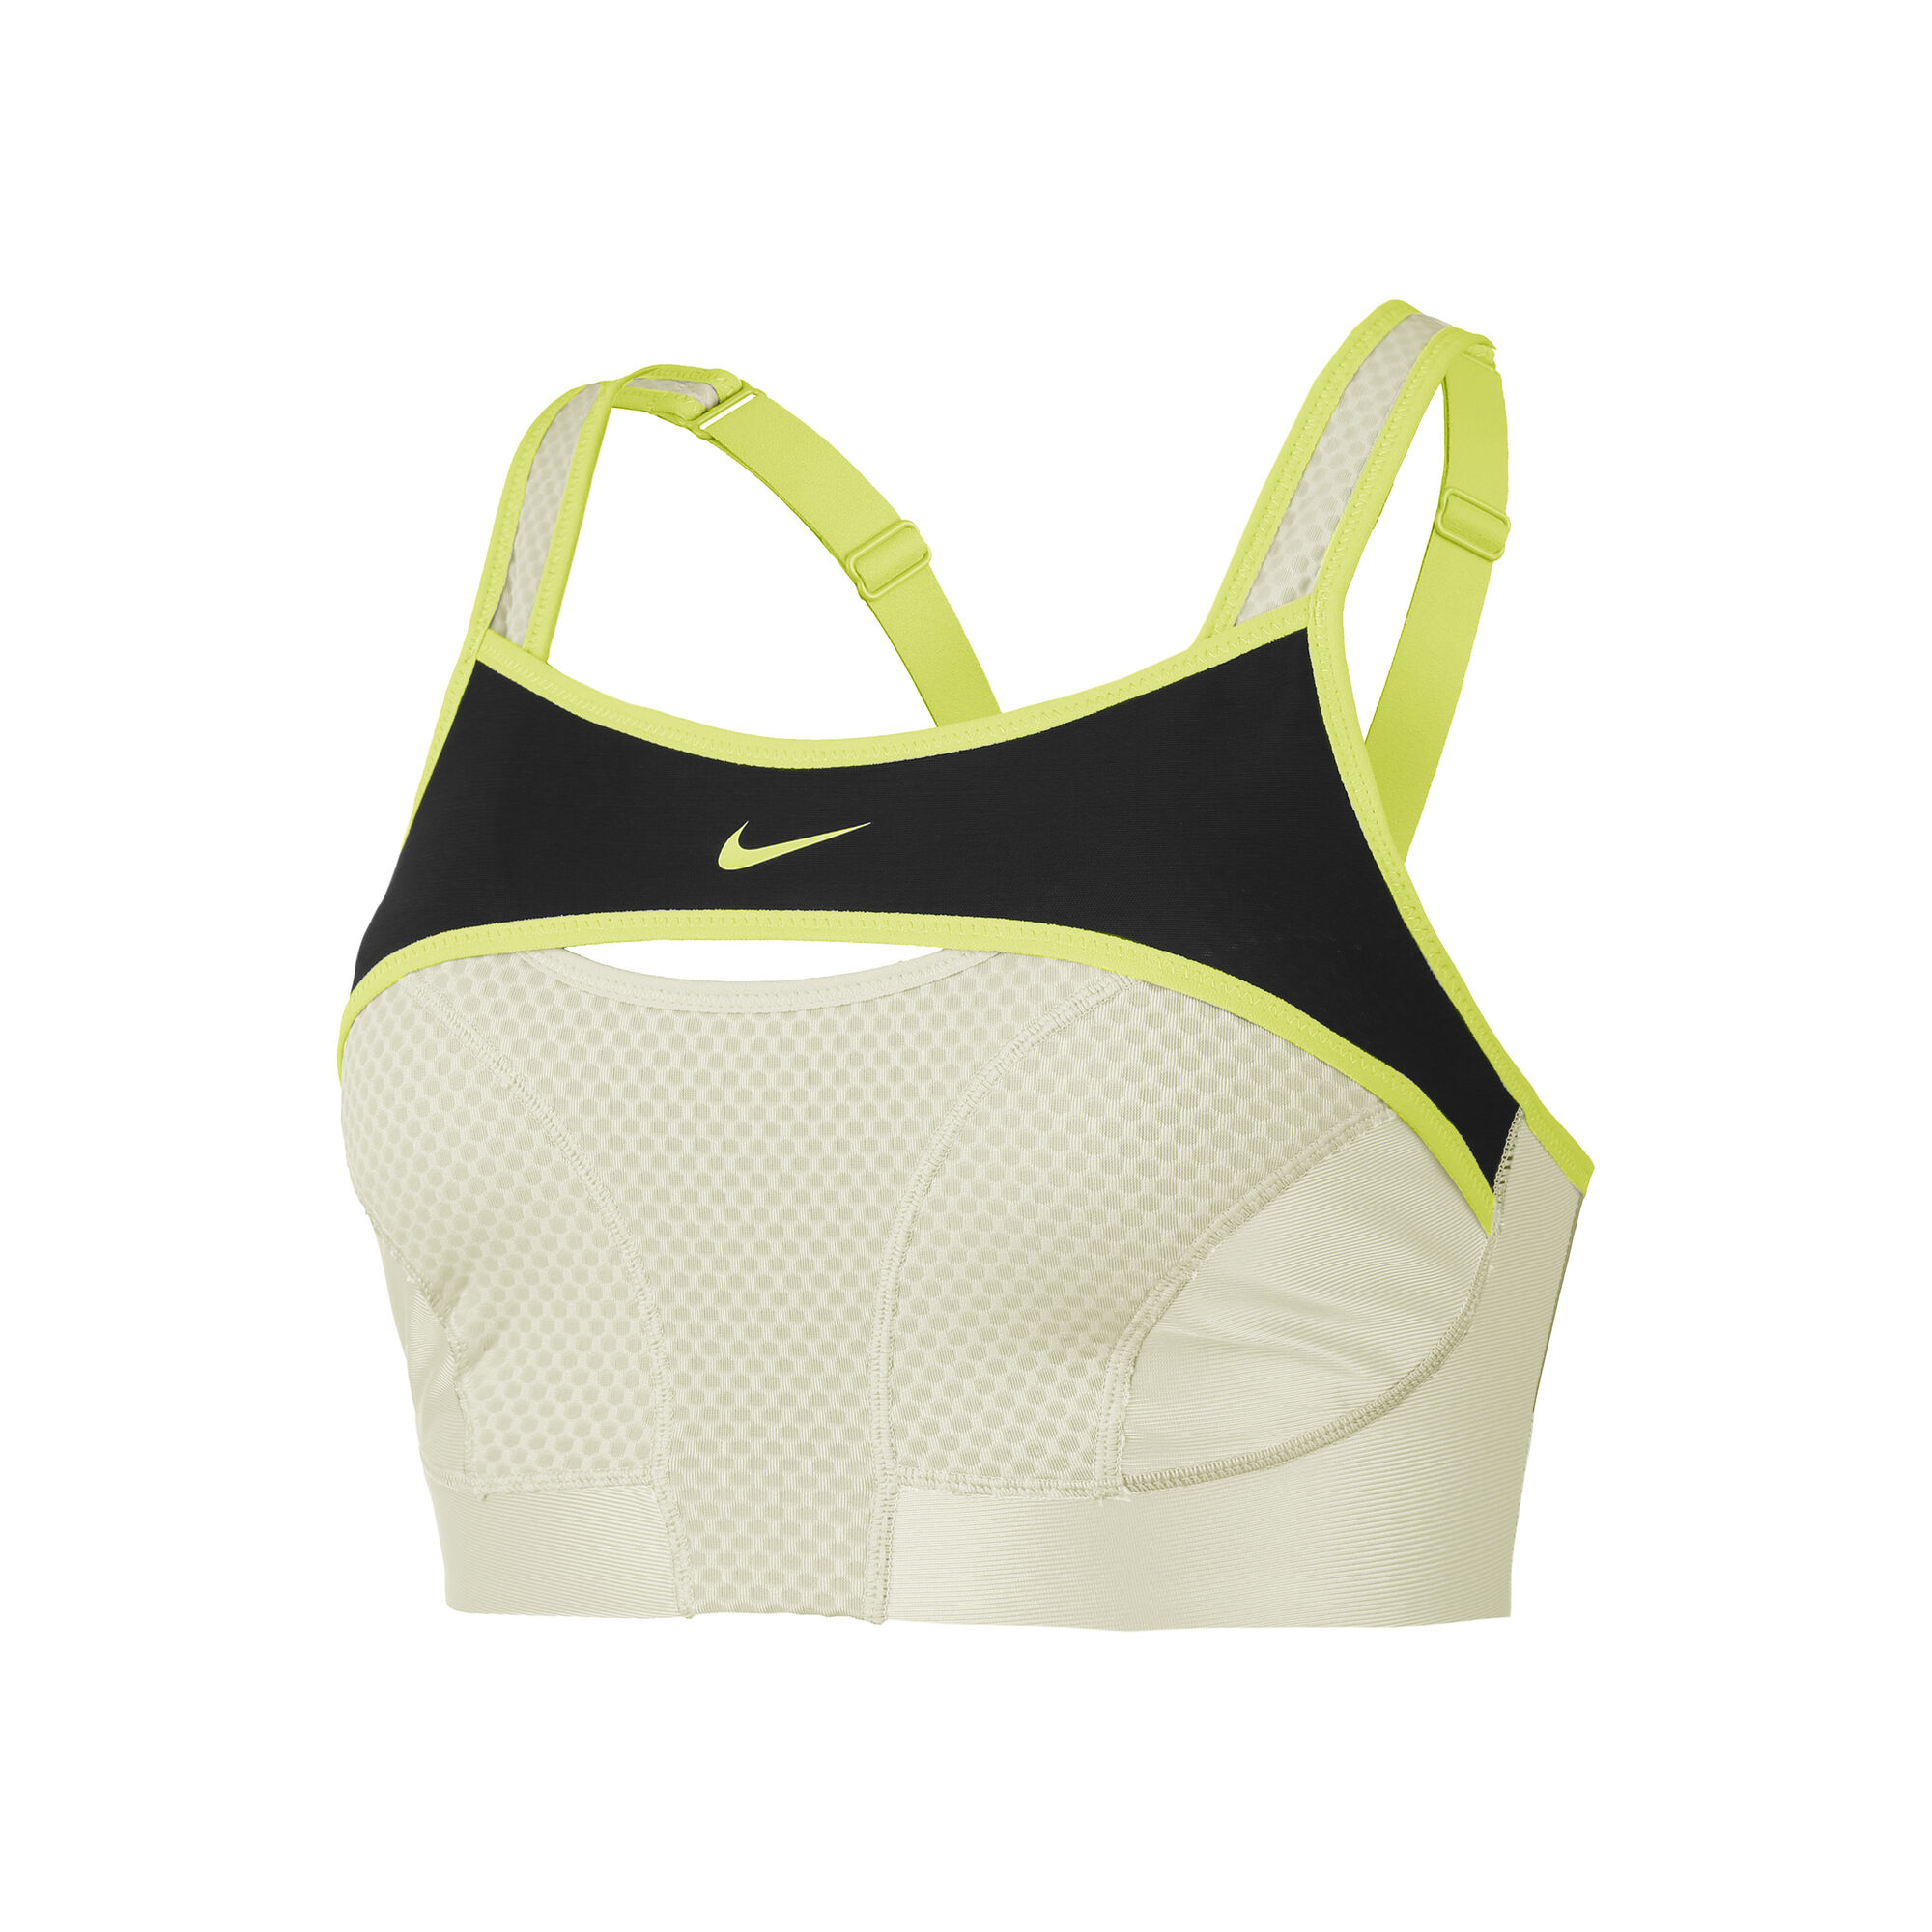 Women's underwear Nike swoosh ultrabreathe - Bras - Women's clothing -  Fitness